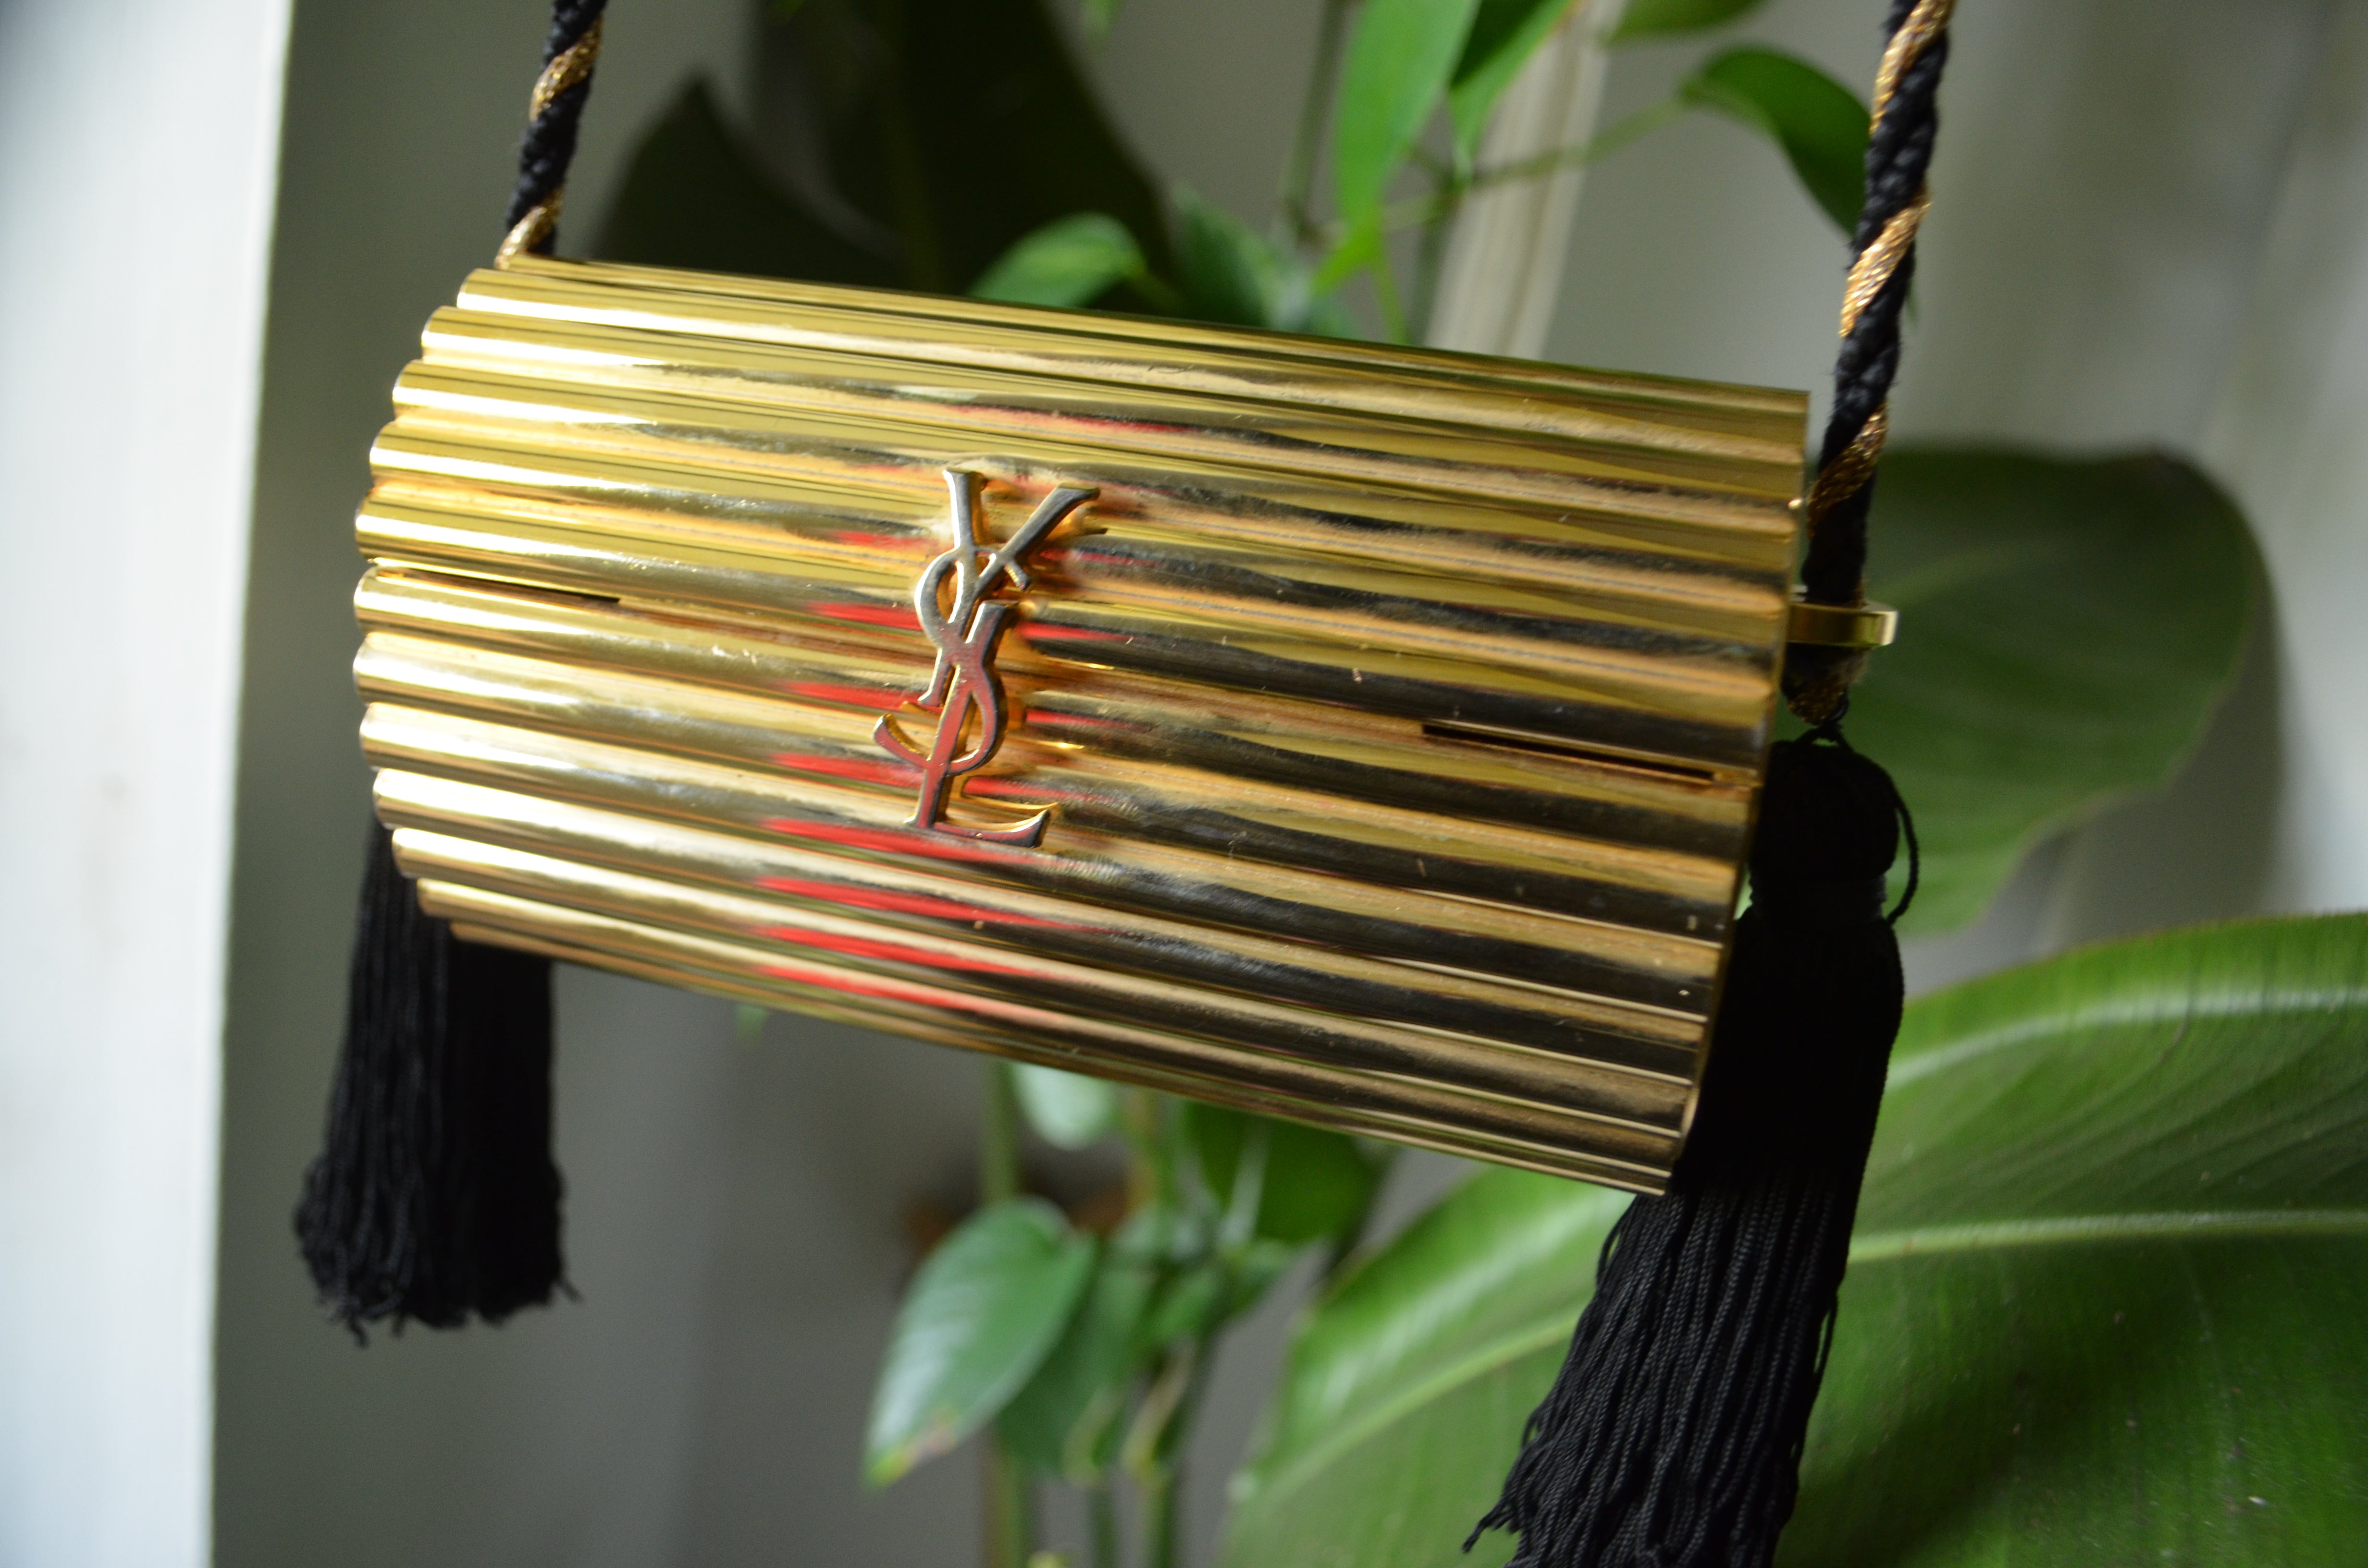 YVES SAINT LAURENT Minaudière Gold metal case tassel Purse Clutch Shoulder bag